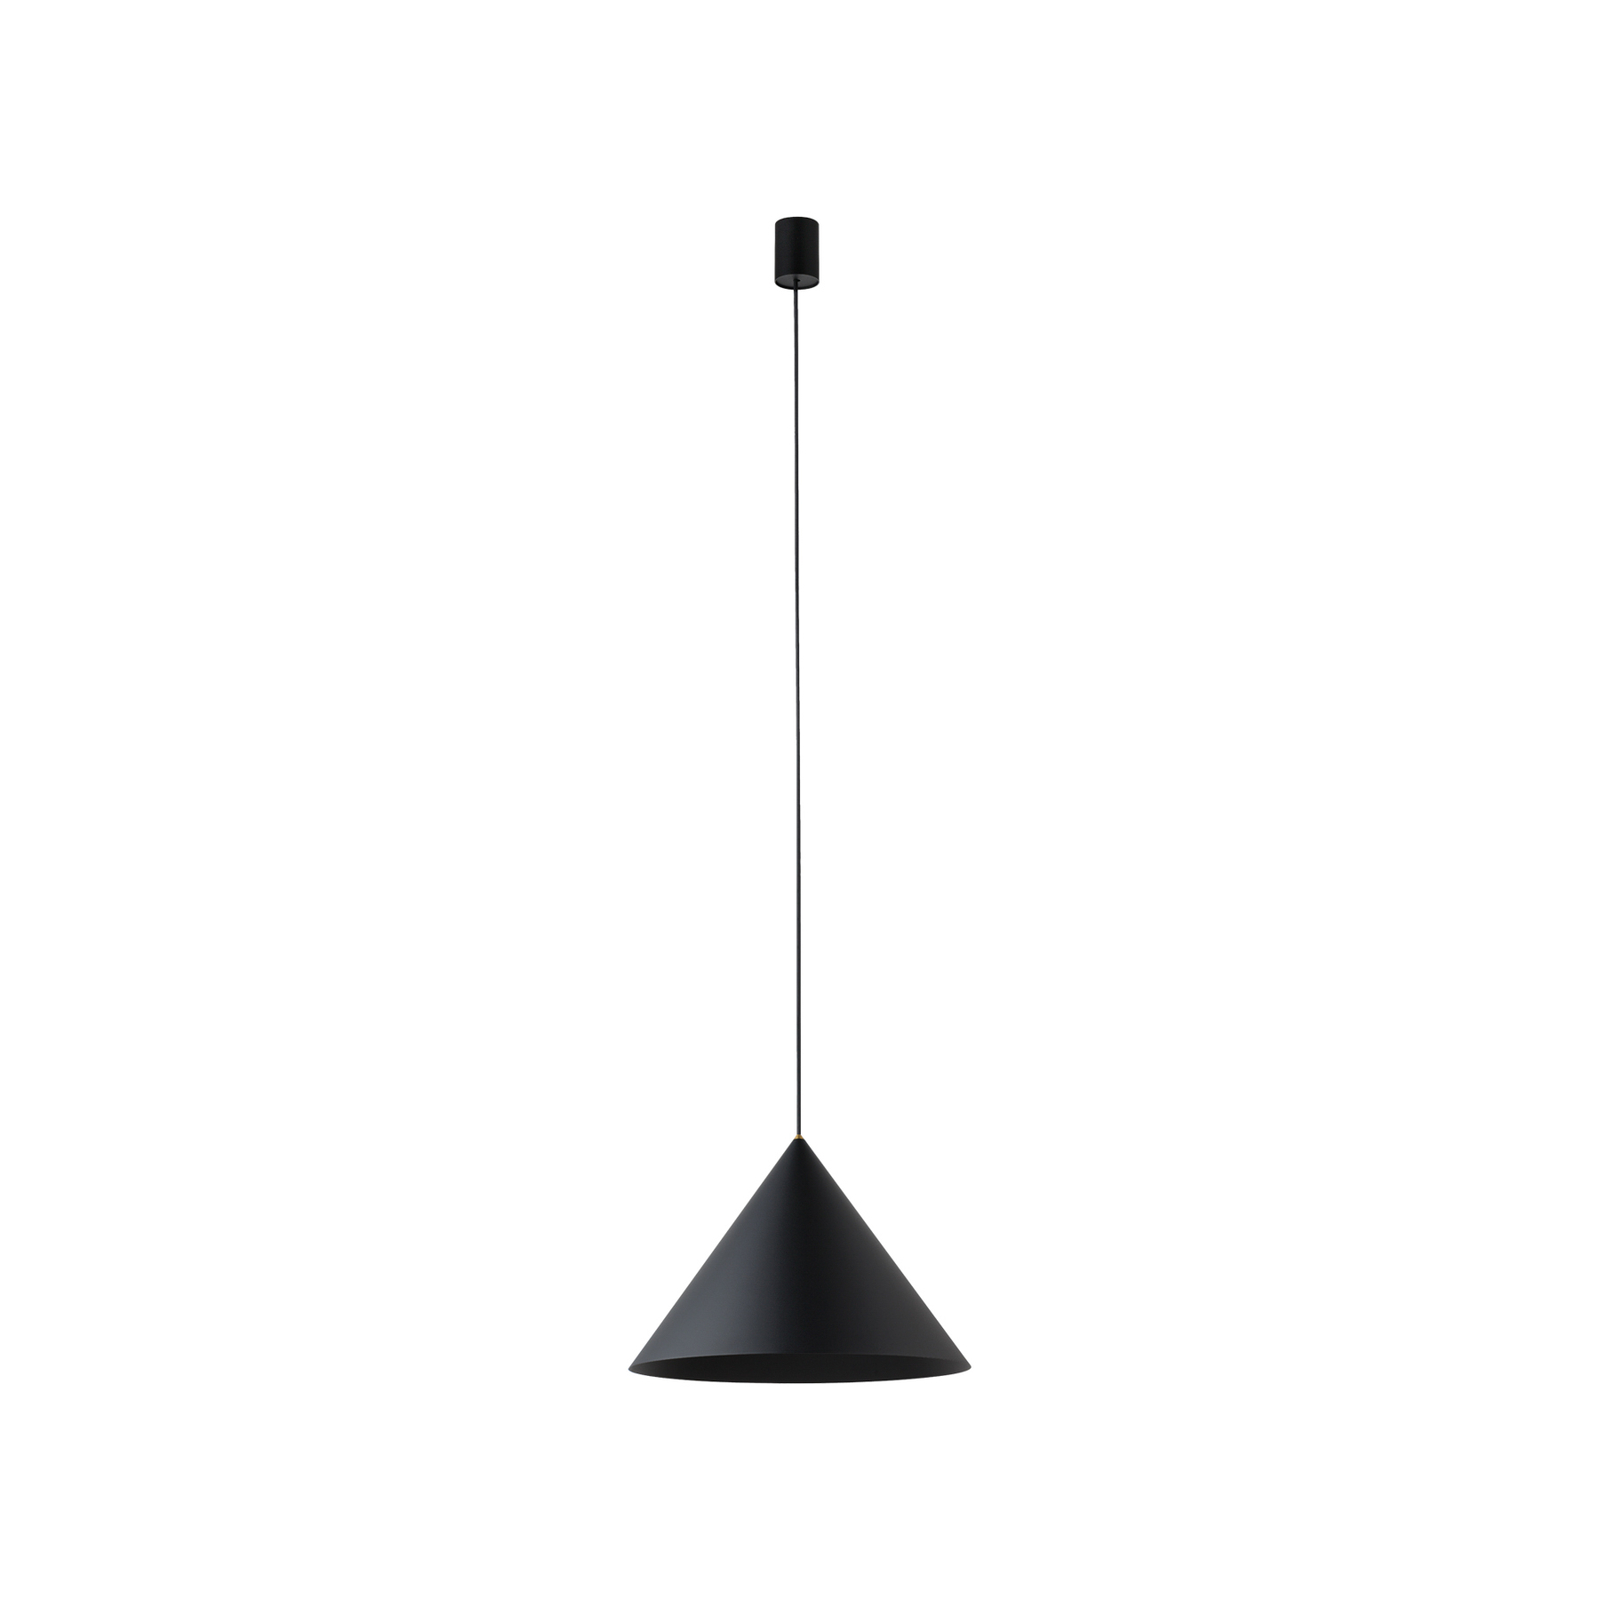 Zenith M hængelampe med metalskærm, sort